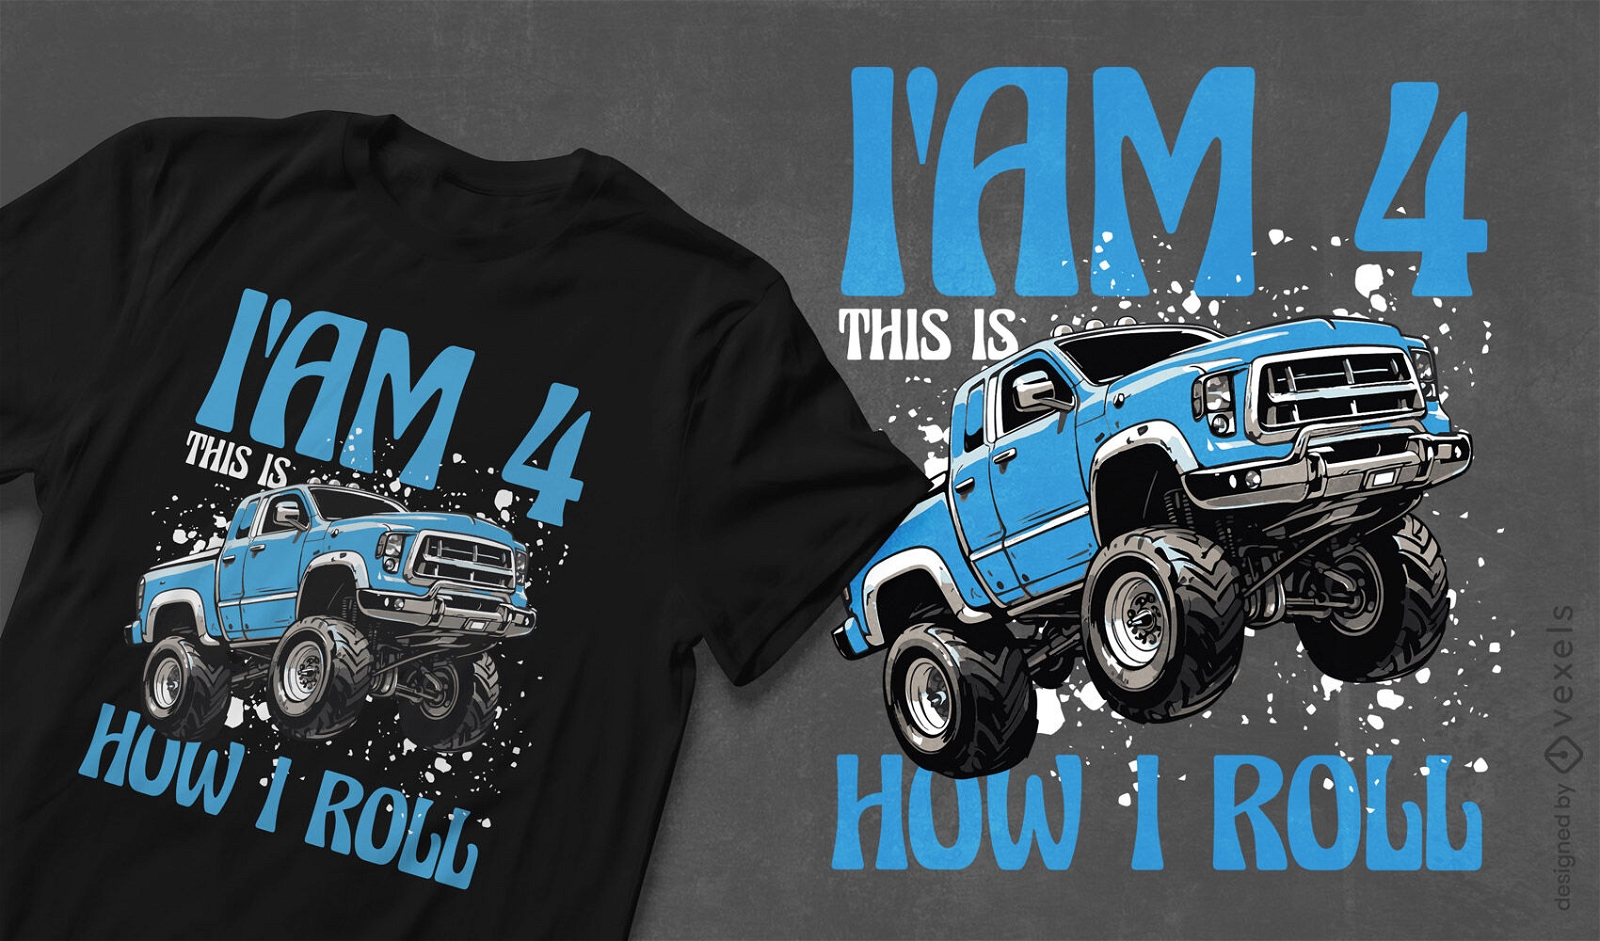 Monster truck roll t-shirt design